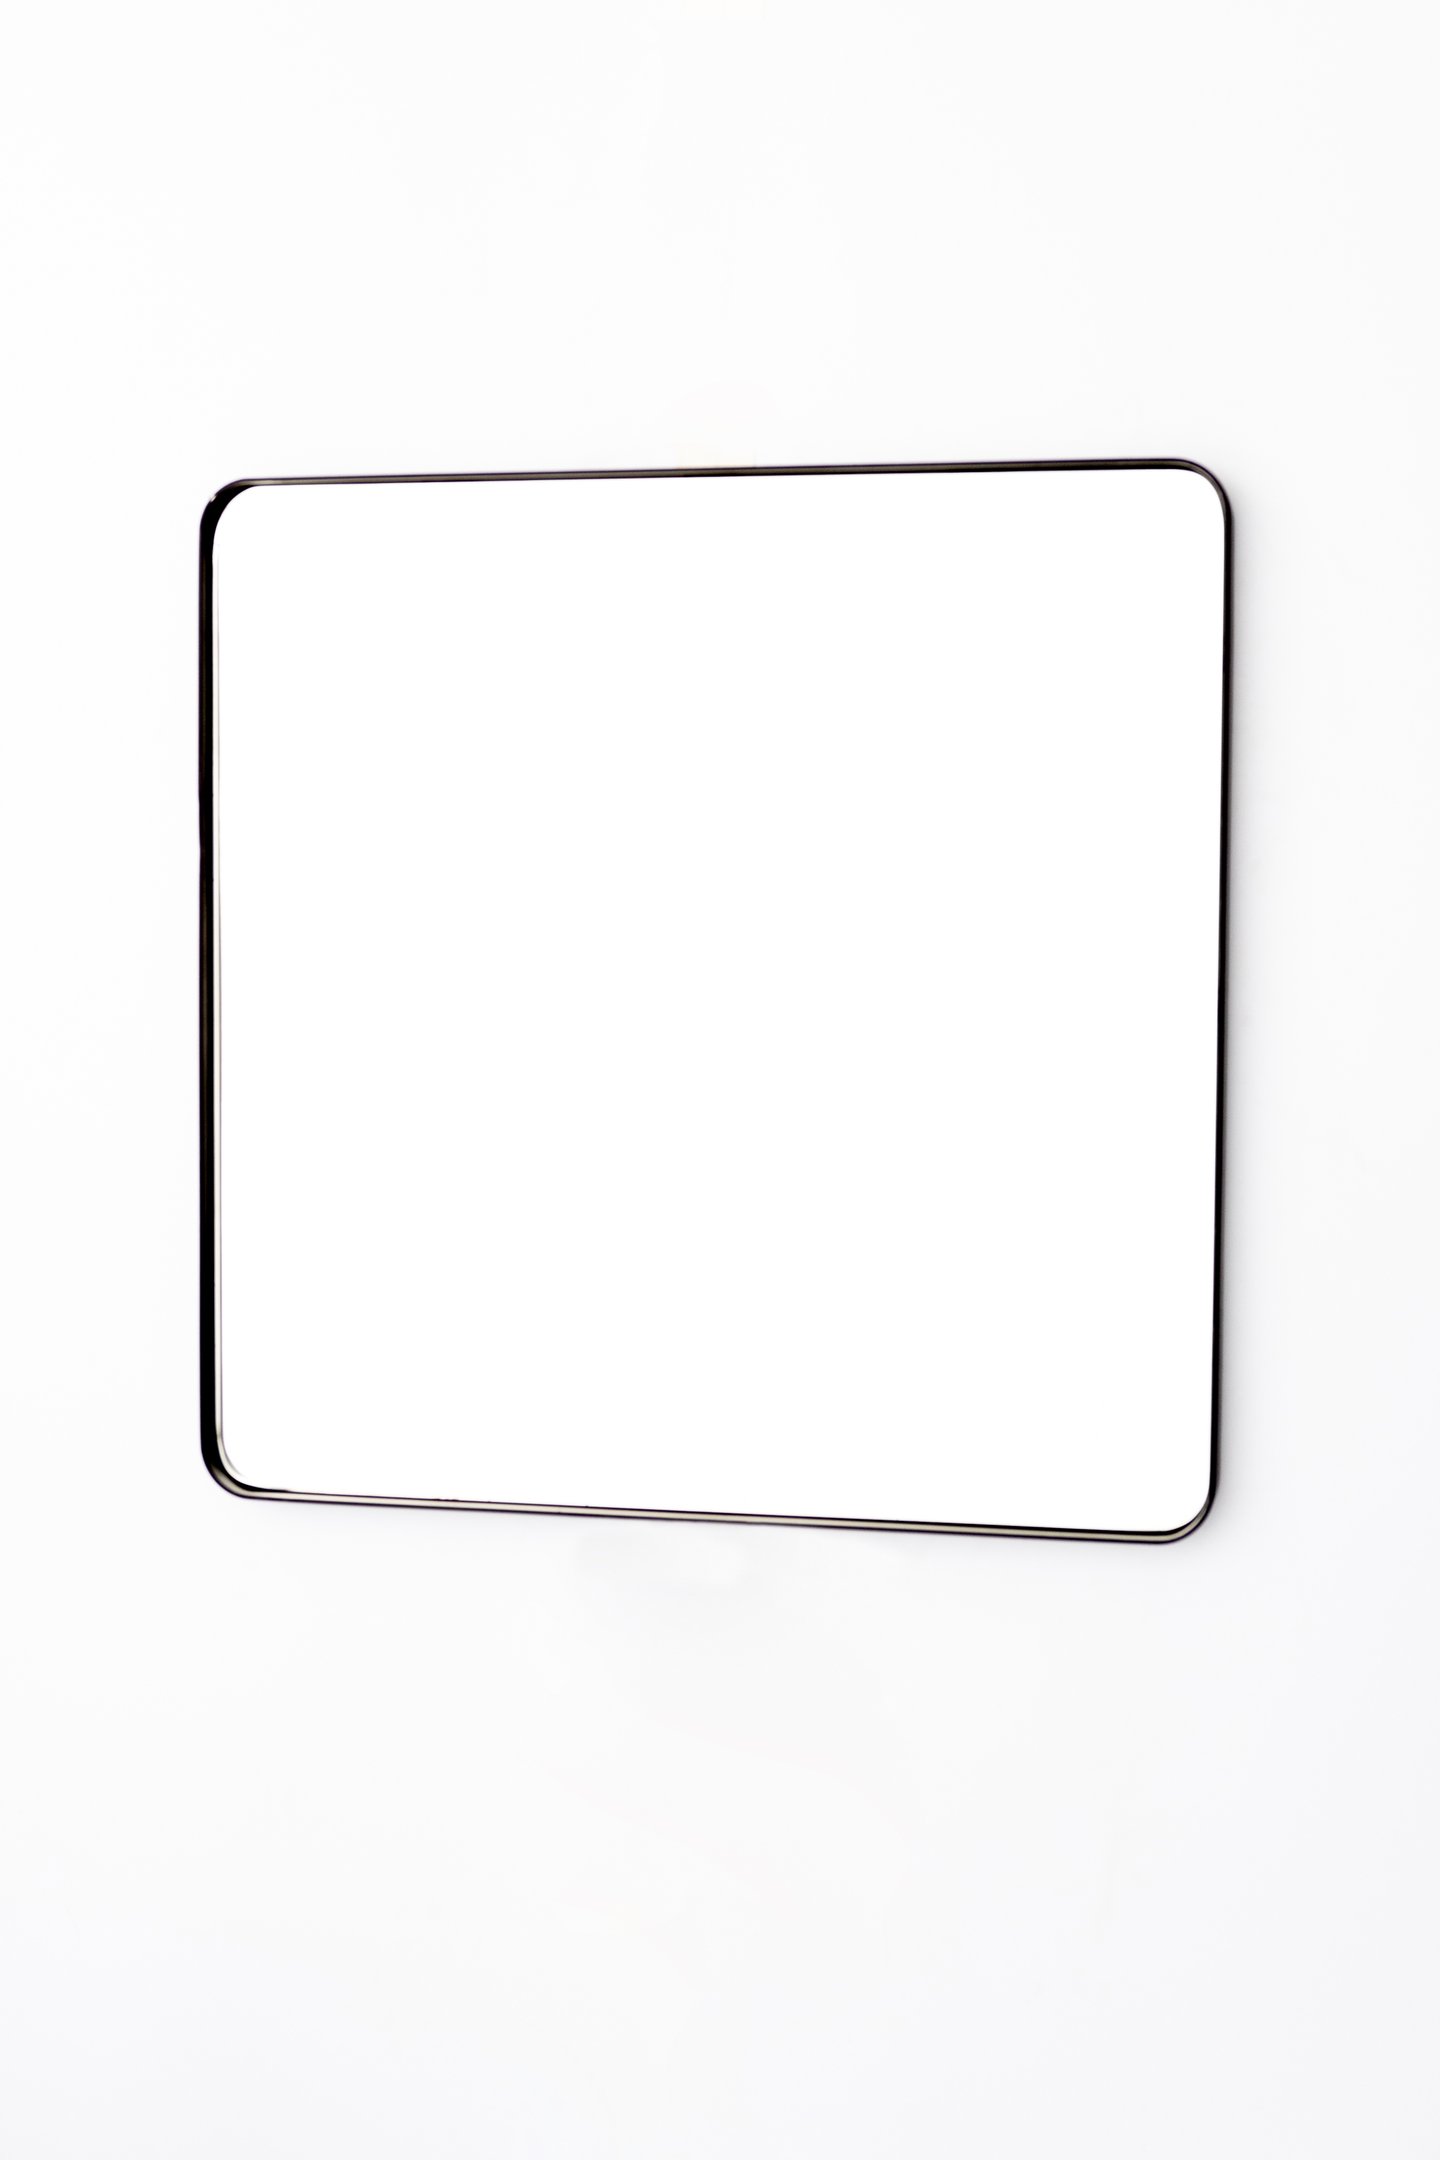 Espelho Quadrado com Moldura em Metal 60 Cm - Cores - Preto - 4